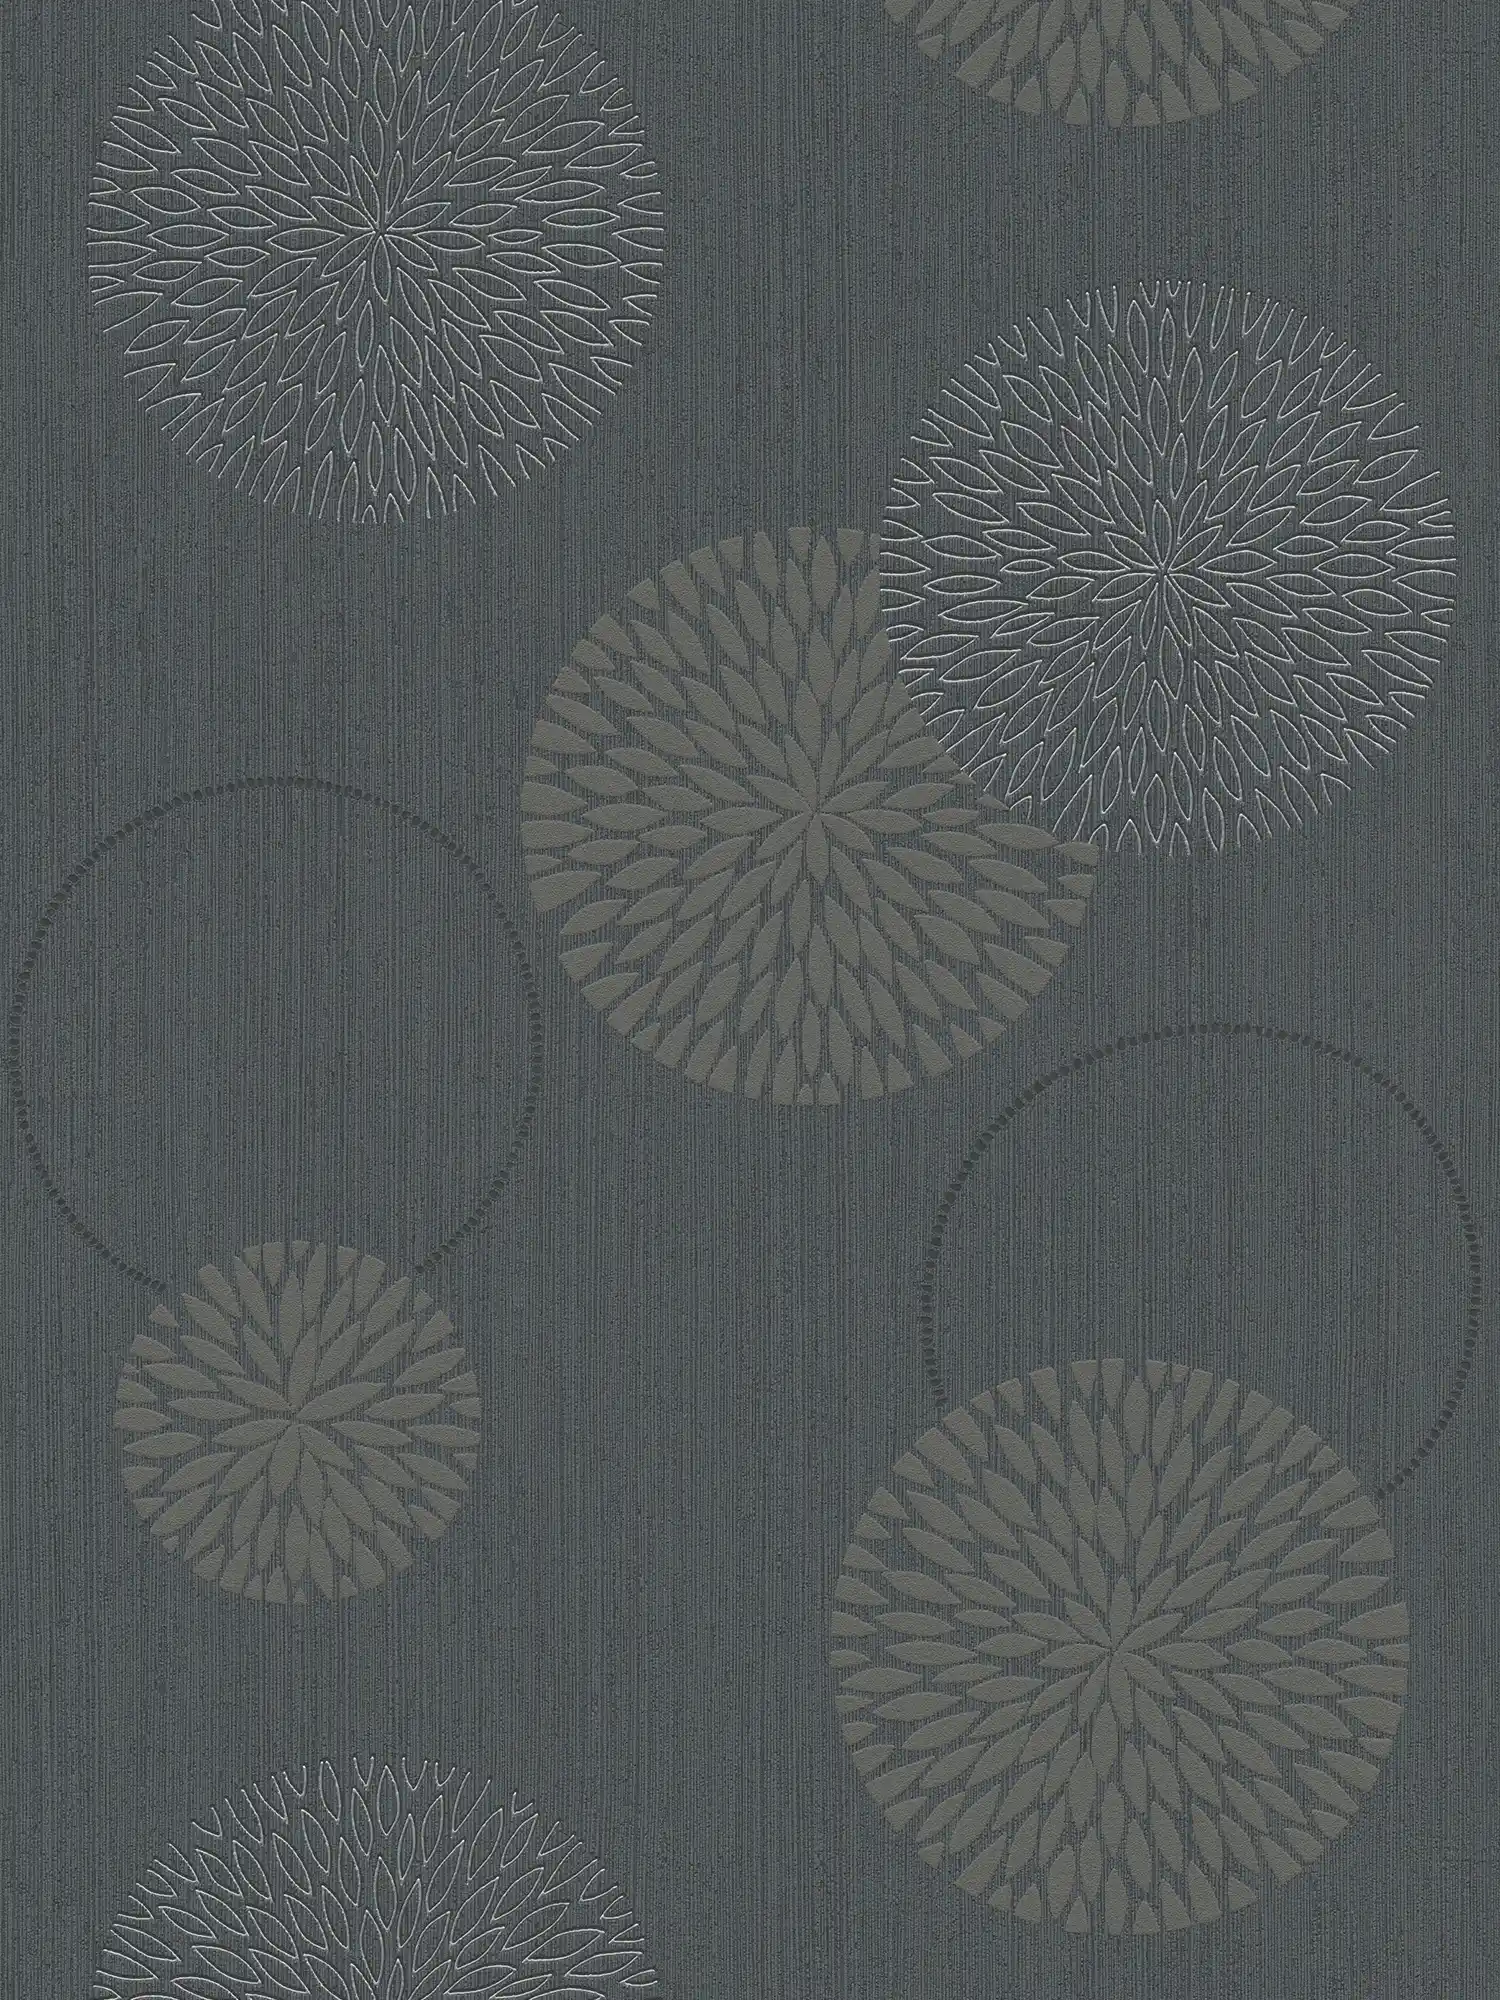 Papier peint intissé fleurs design abstrait - gris, noir
